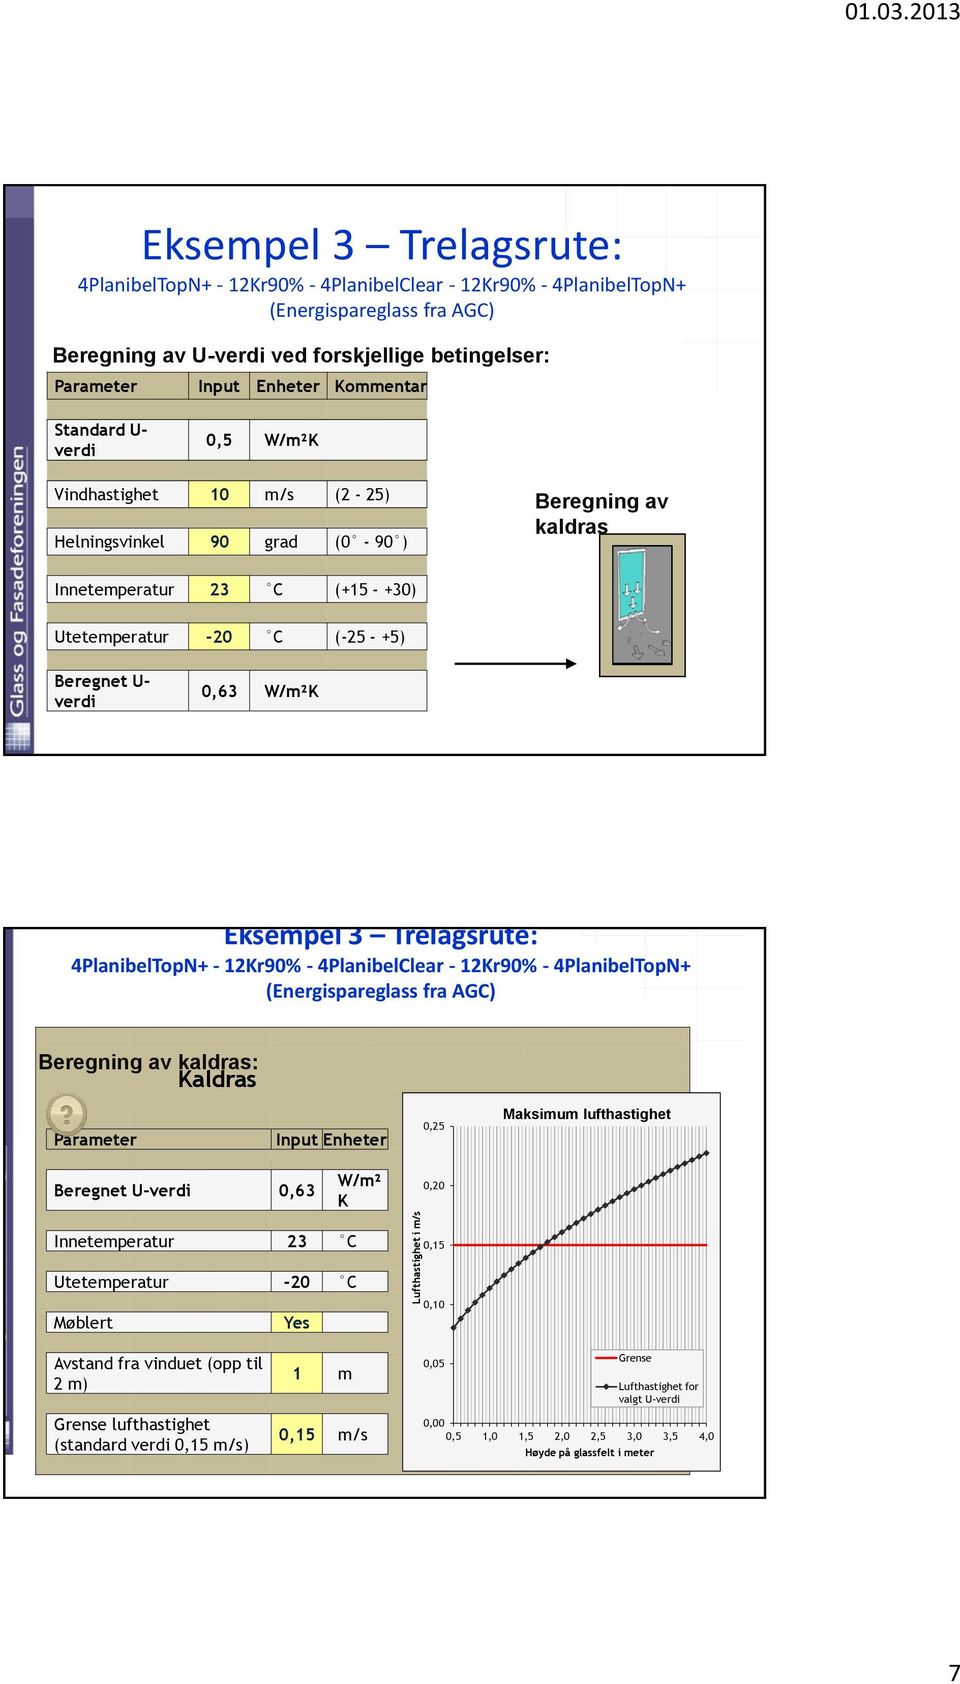 Kommentar Standard U- verdi 0,5 W/m²K Vindhastighet 10 m/s (2-25) Helningsvinkel 90 grad (0-90 ) Innetemperatur 23 C (+15 - +30) Beregning av kaldras Utetemperatur -20 C (-25 - +5) Beregnet U- verdi